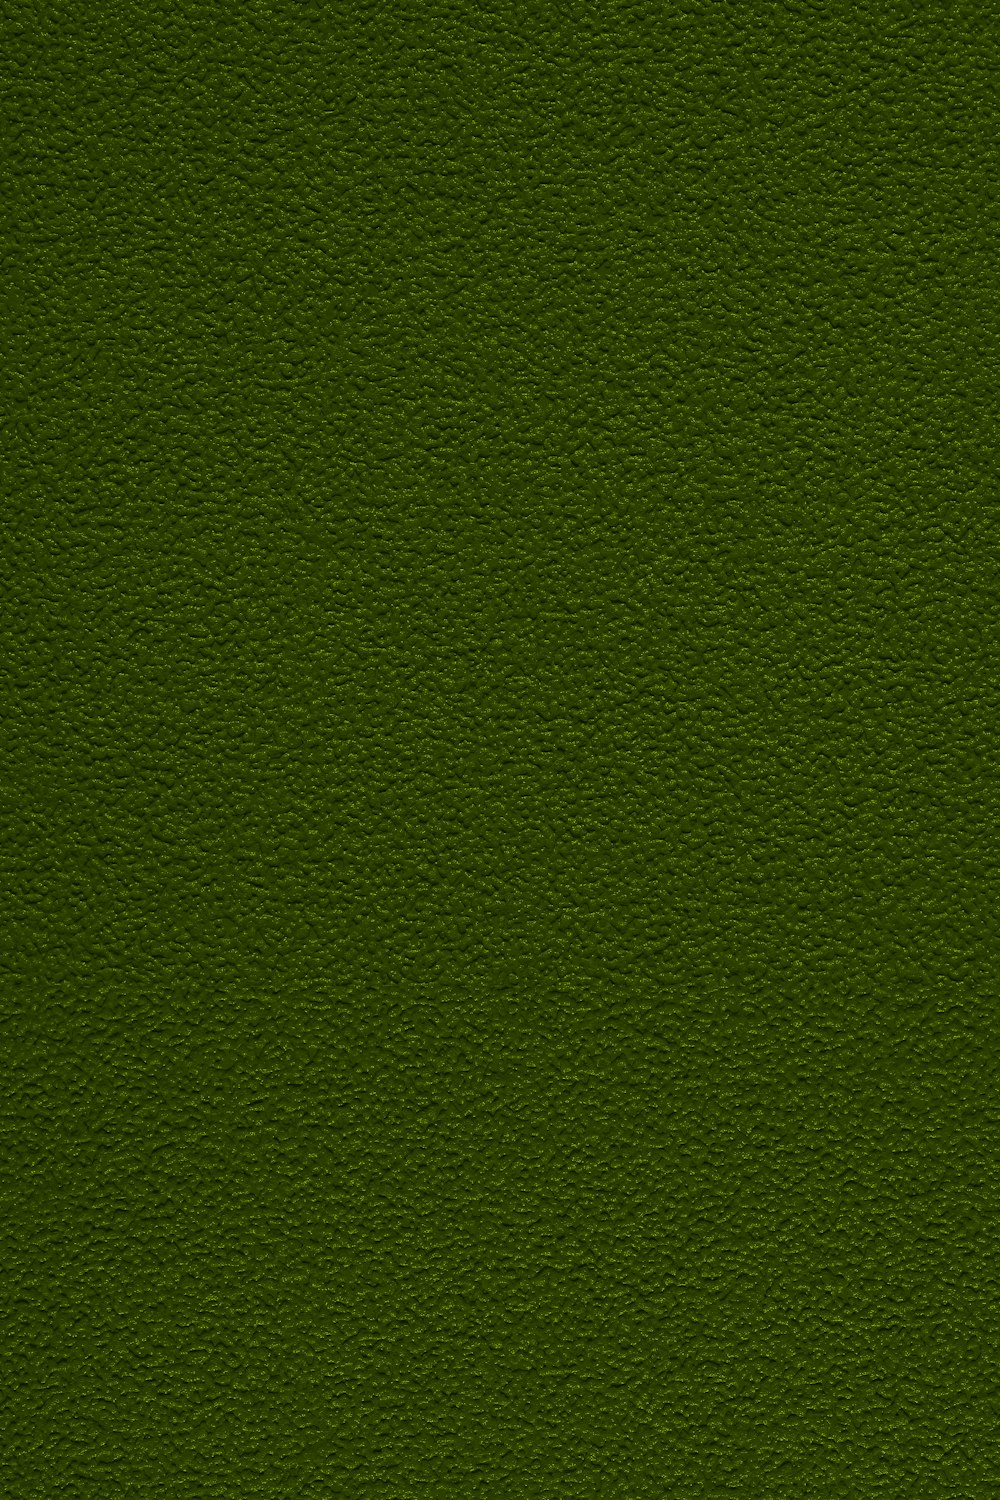 un primer plano de una superficie verde con un pequeño parche de hierba